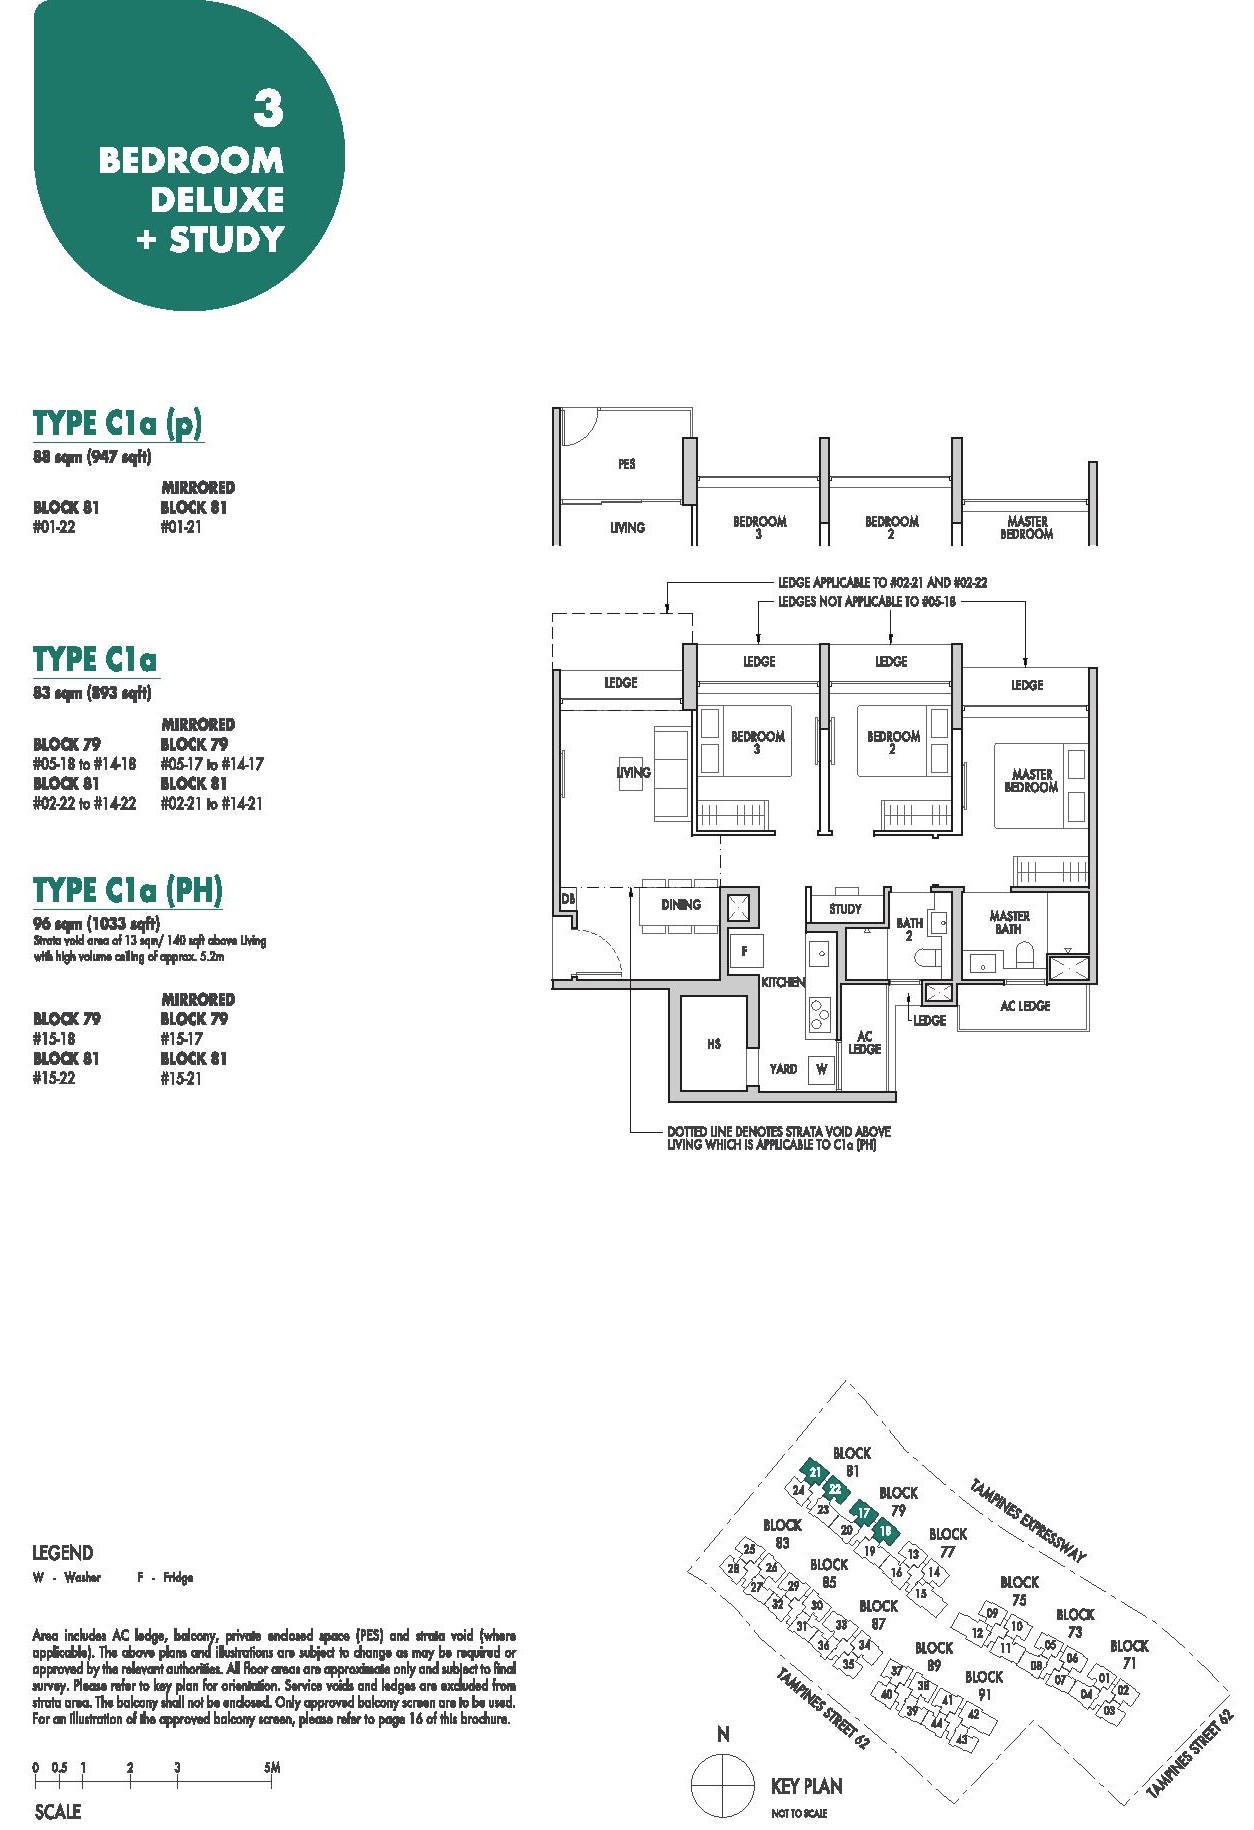 Tenet EC Floor Plan 3 Bedroom Deluxe + Study Type C1a 83 Sqm 893 Sqft